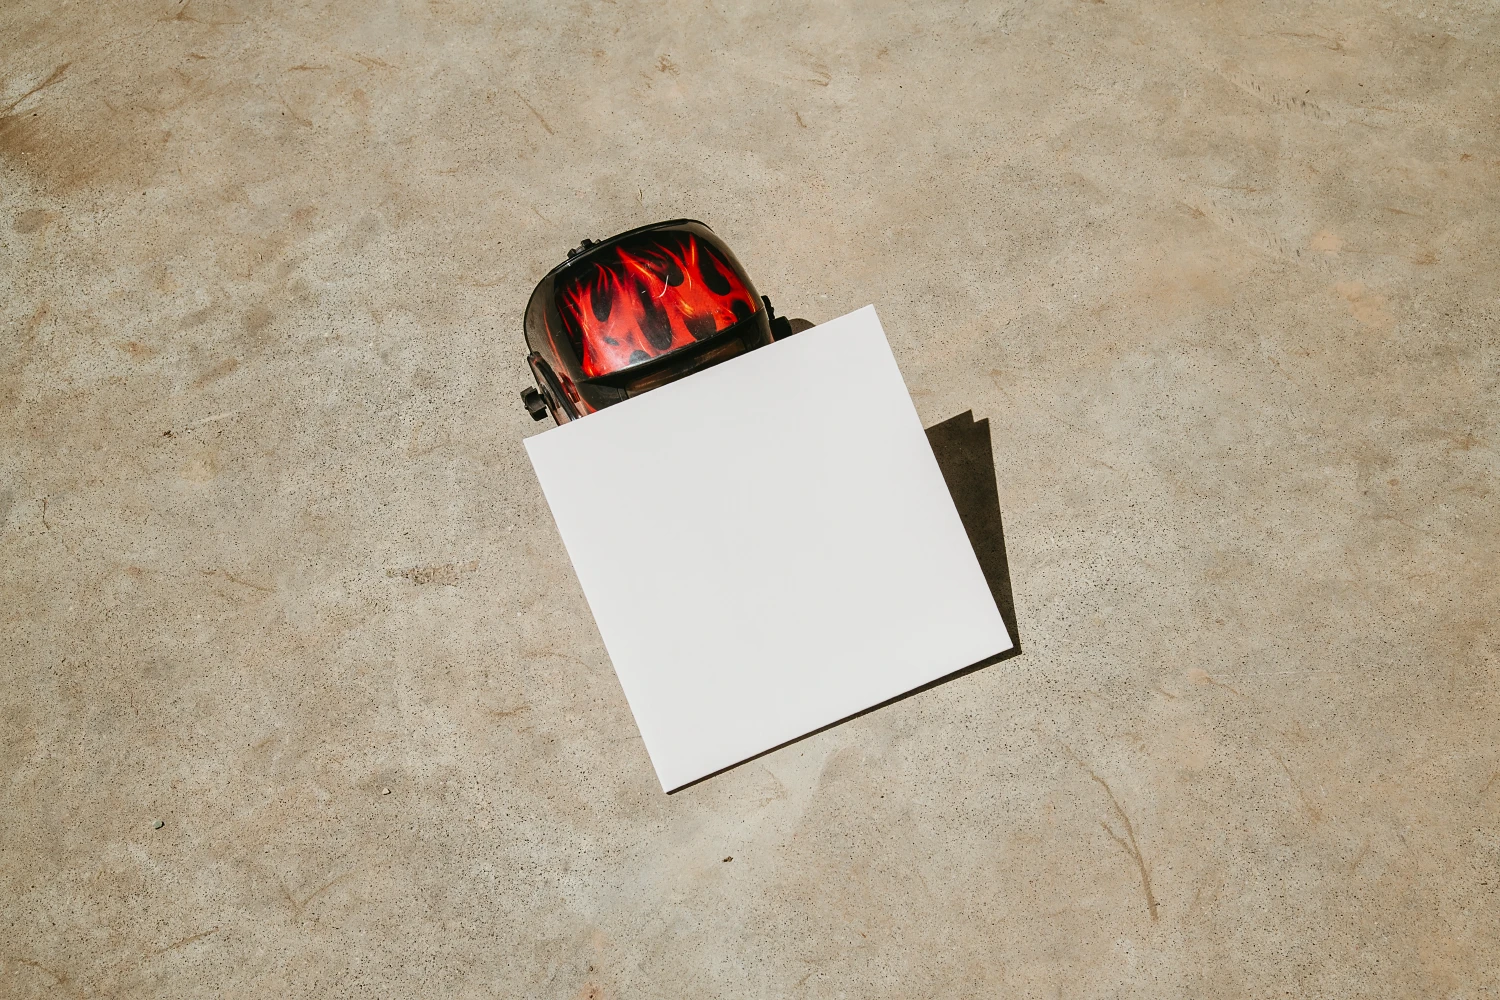 Urban vinyl mockup placed against an industrial helmet.